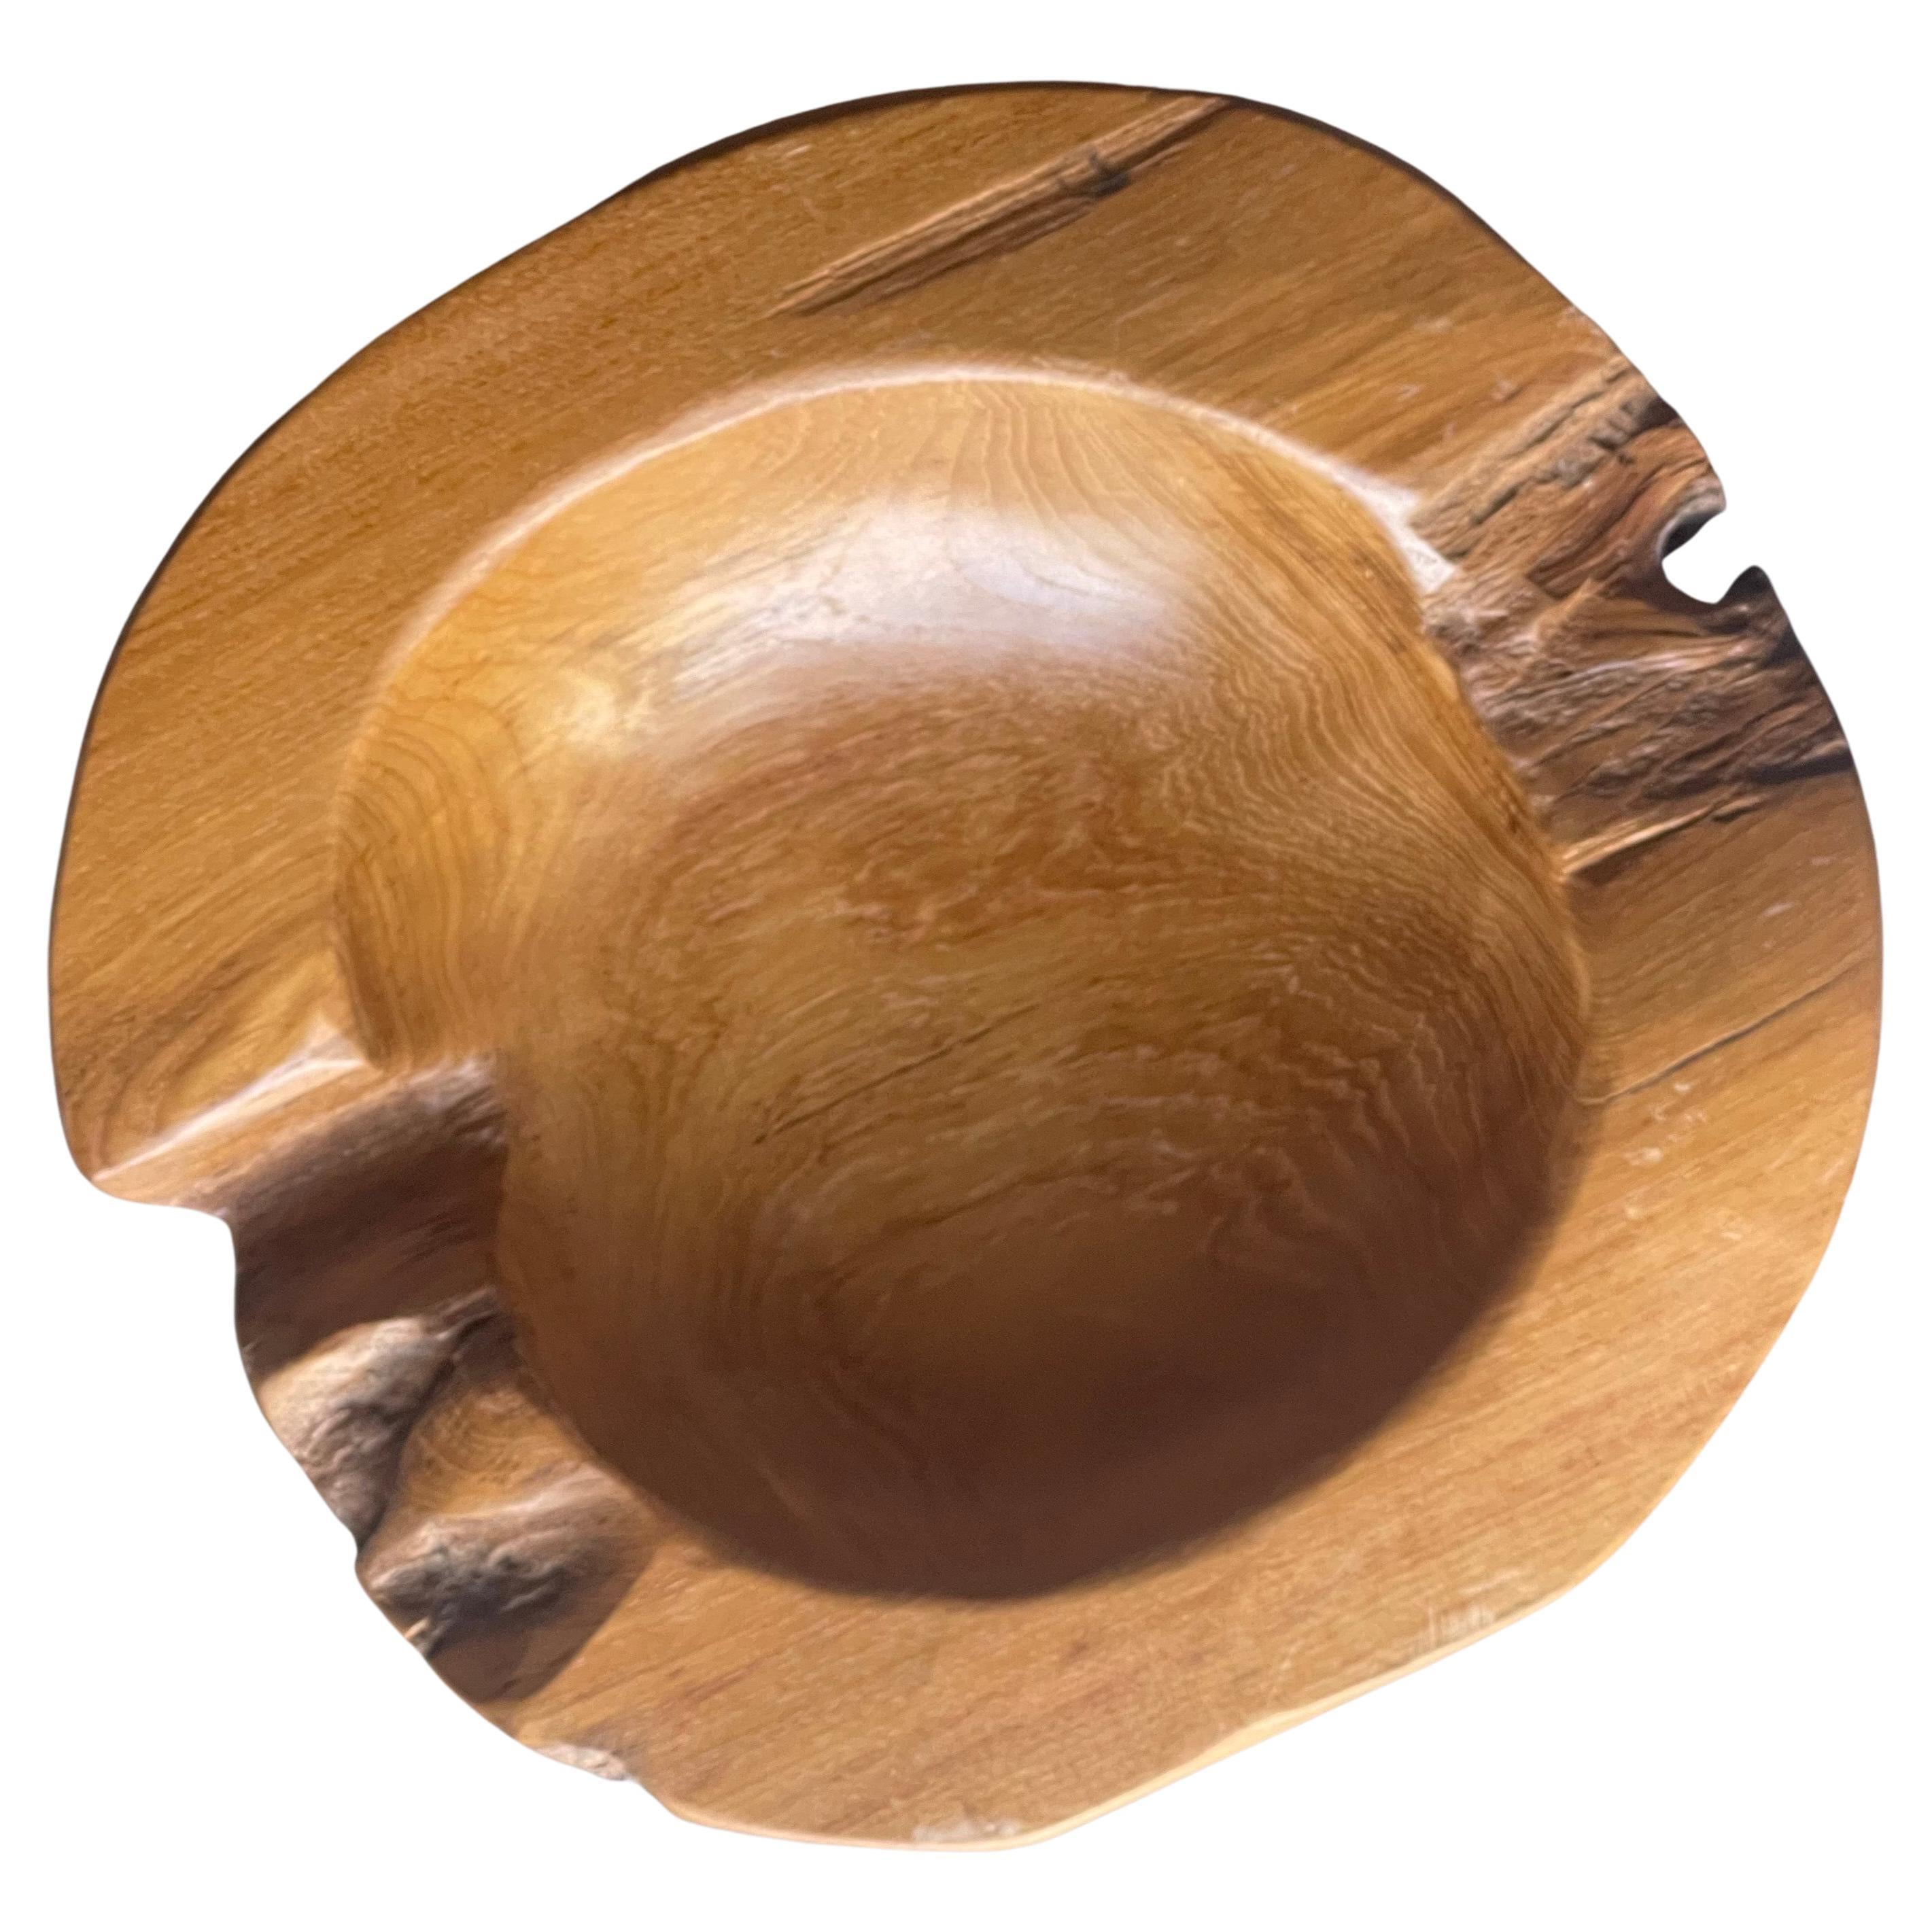 Eine wunderschöne runde Schale aus natürlichem Teakholz in freier Form, um 1960. Die Schale hat einen tollen organischen, modernen Look und misst 11